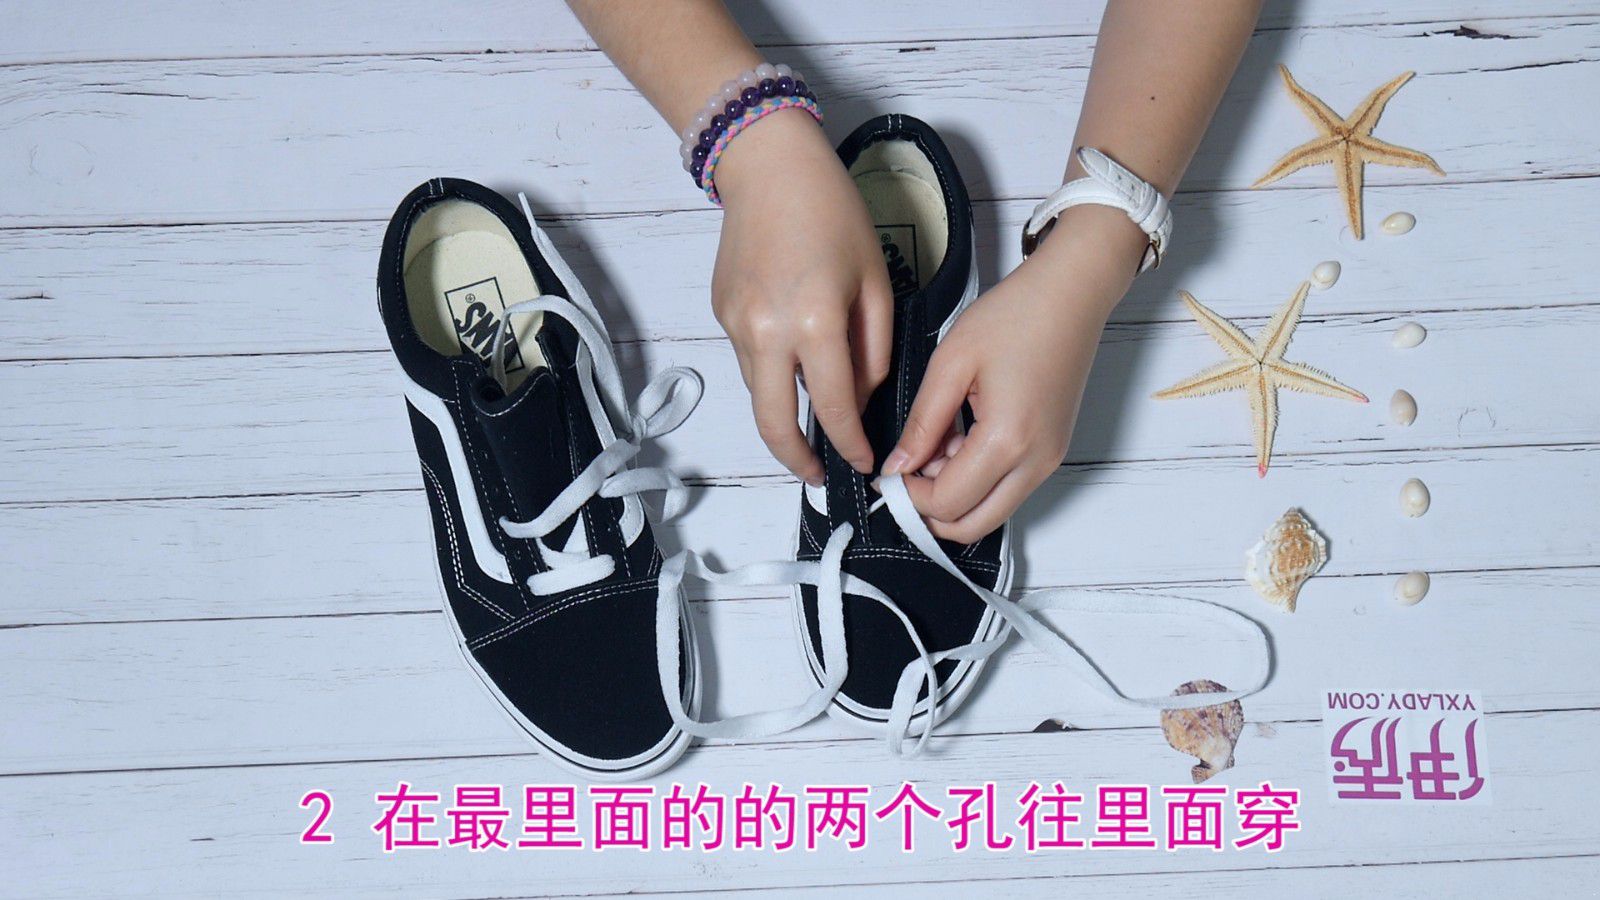 鞋带的系法图解 这样才与众不同_伊秀视频|yxlady.com